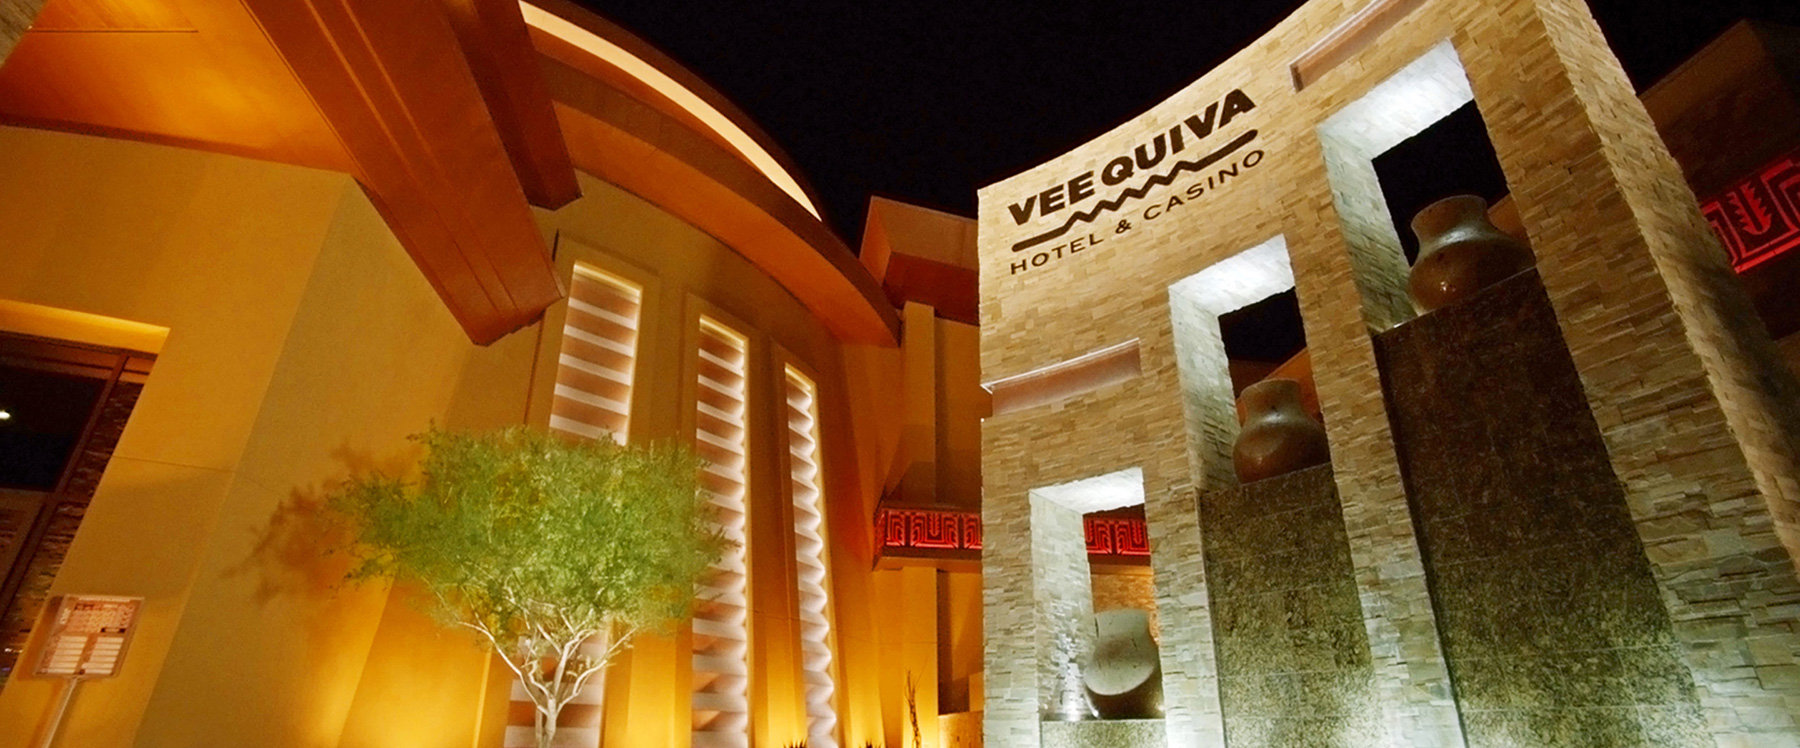 vee quiva resort and casino